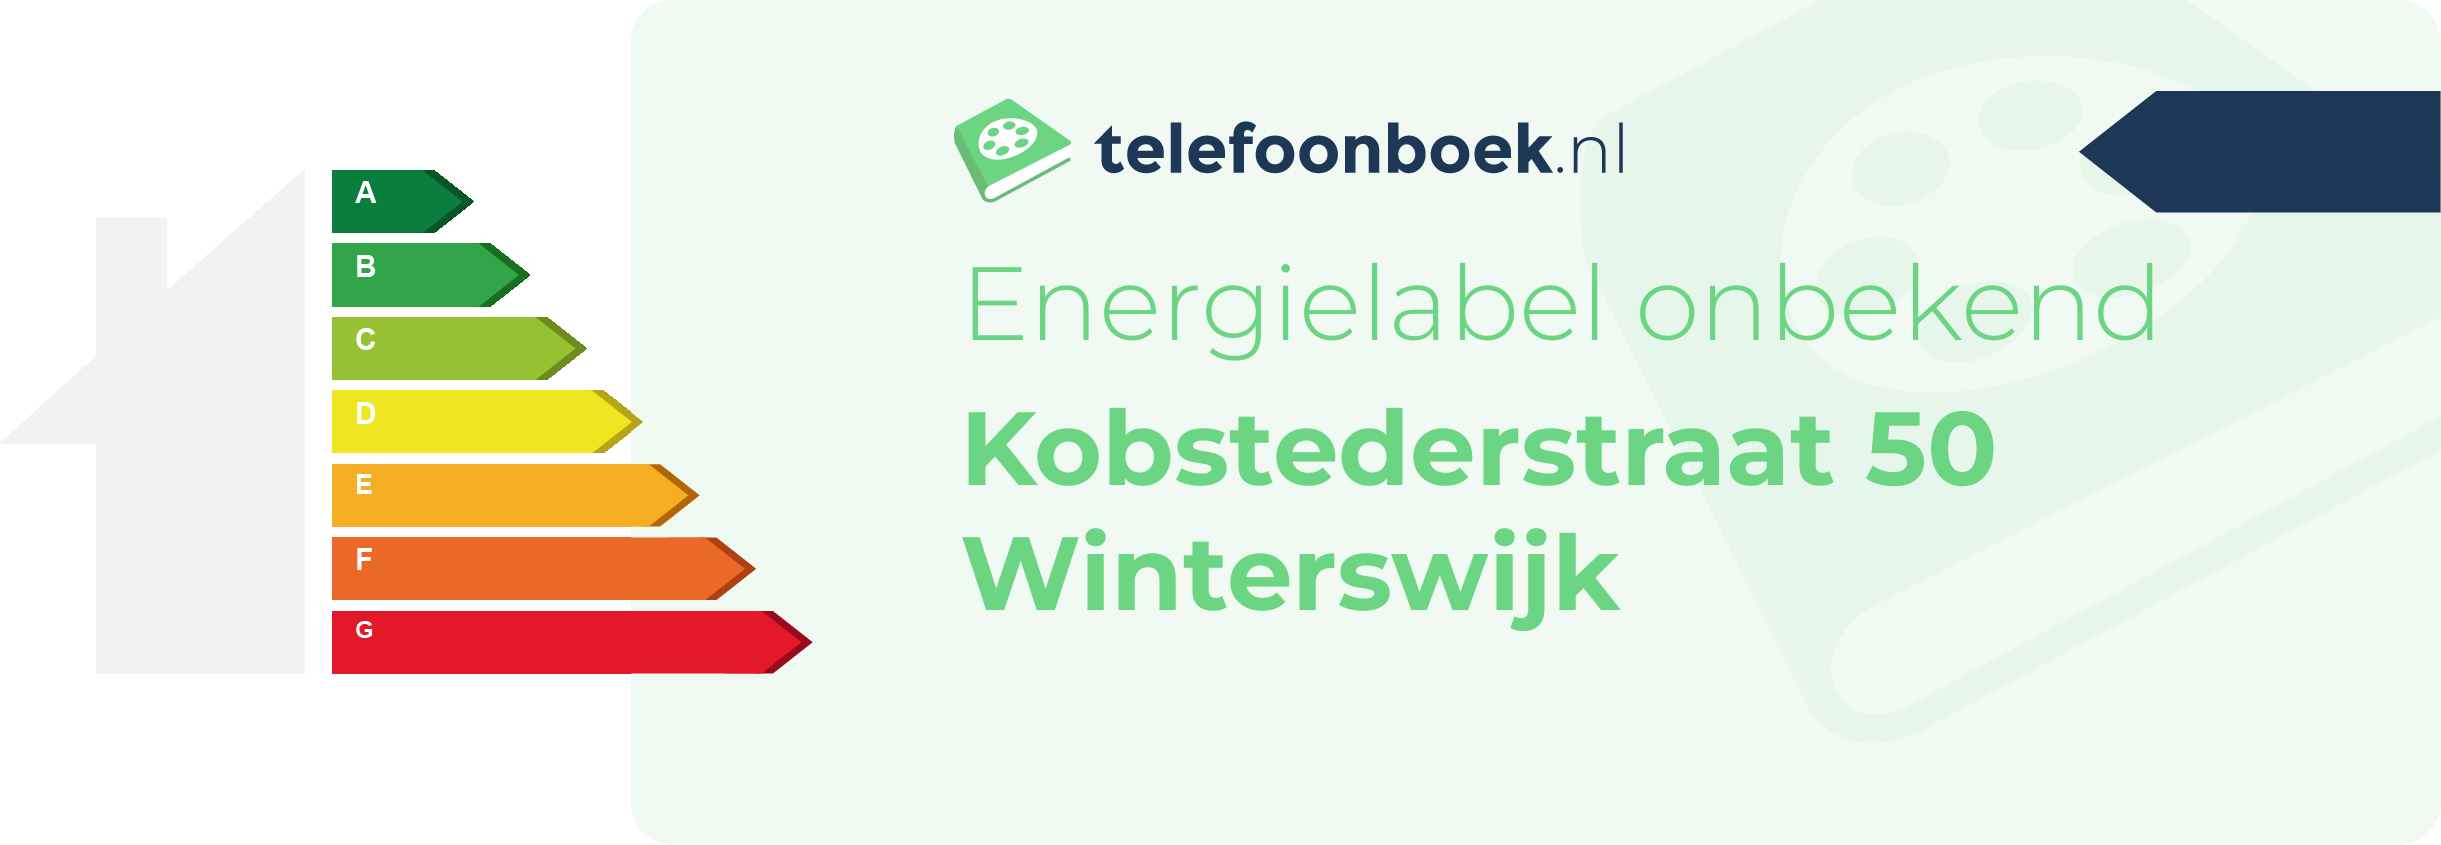 Energielabel Kobstederstraat 50 Winterswijk